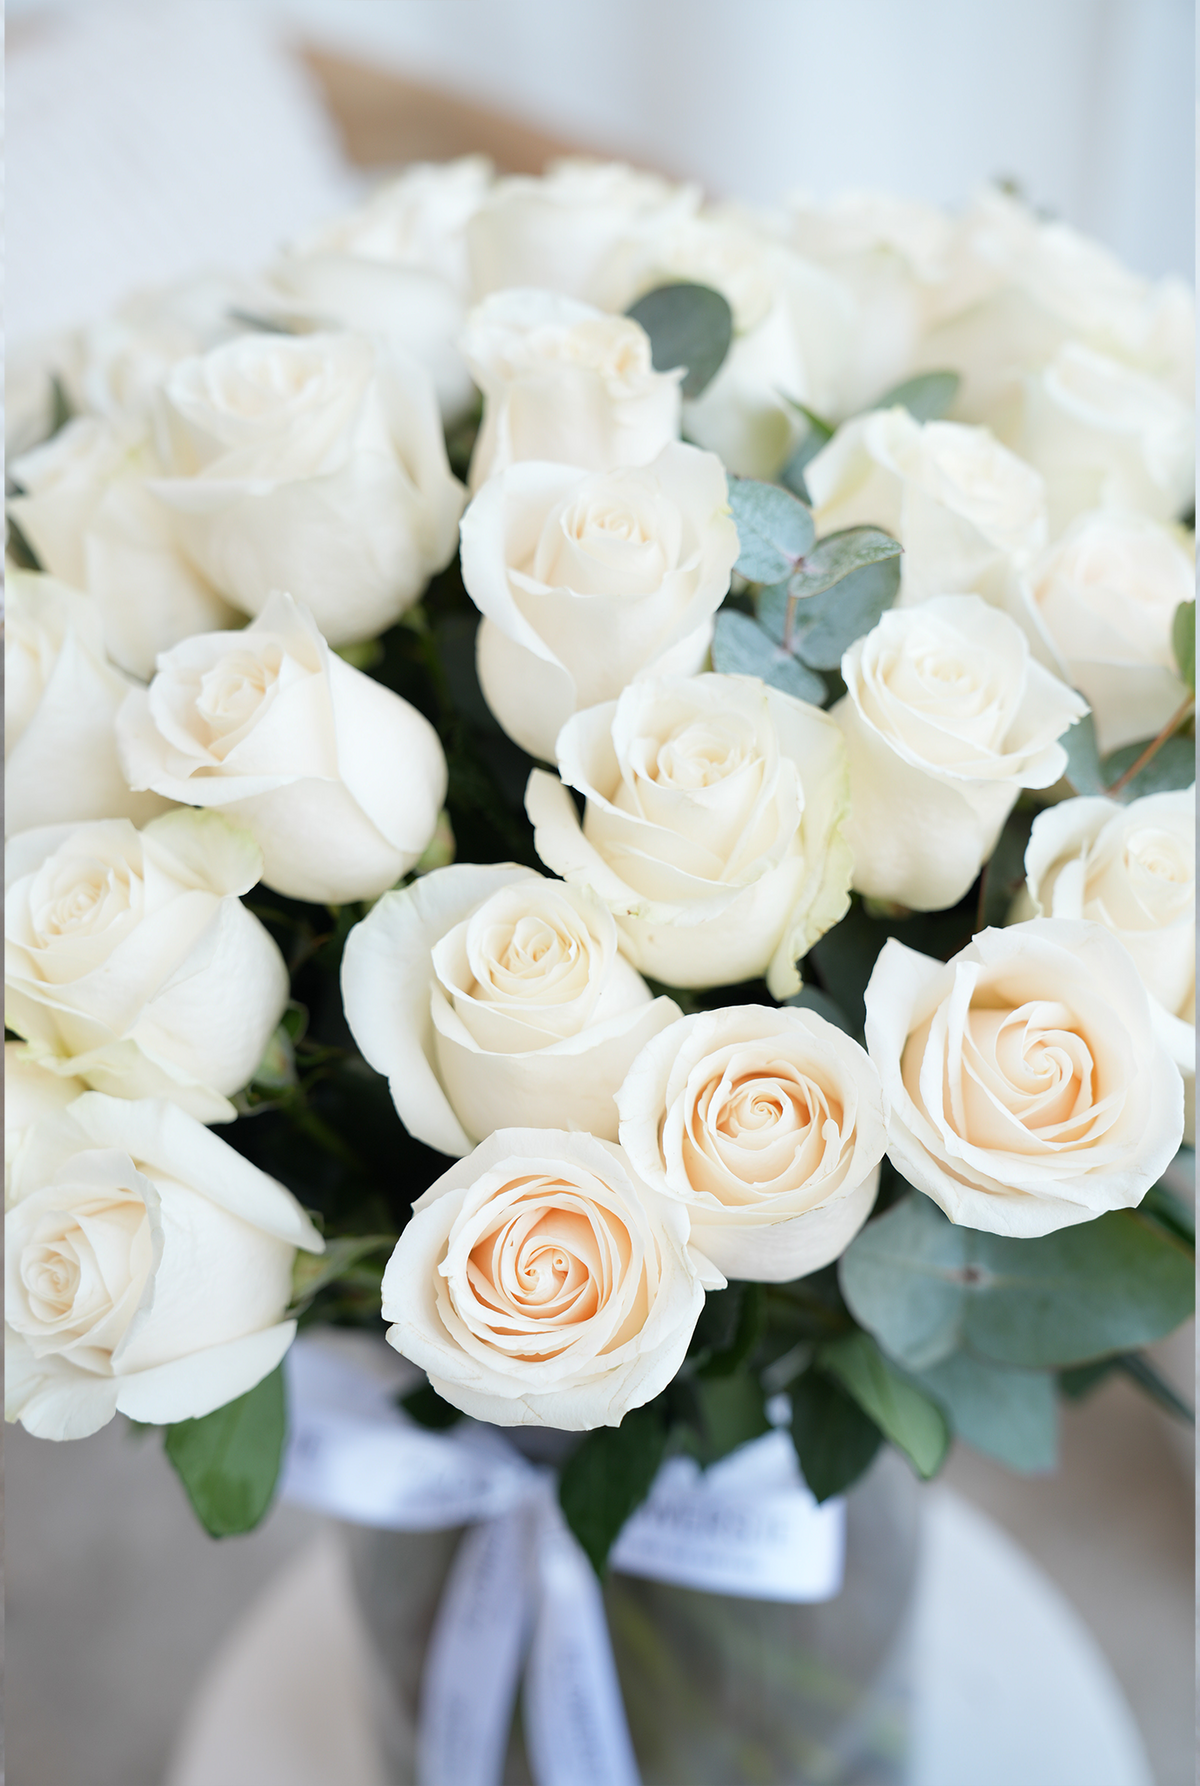 50 Long Stem White Roses - Vase